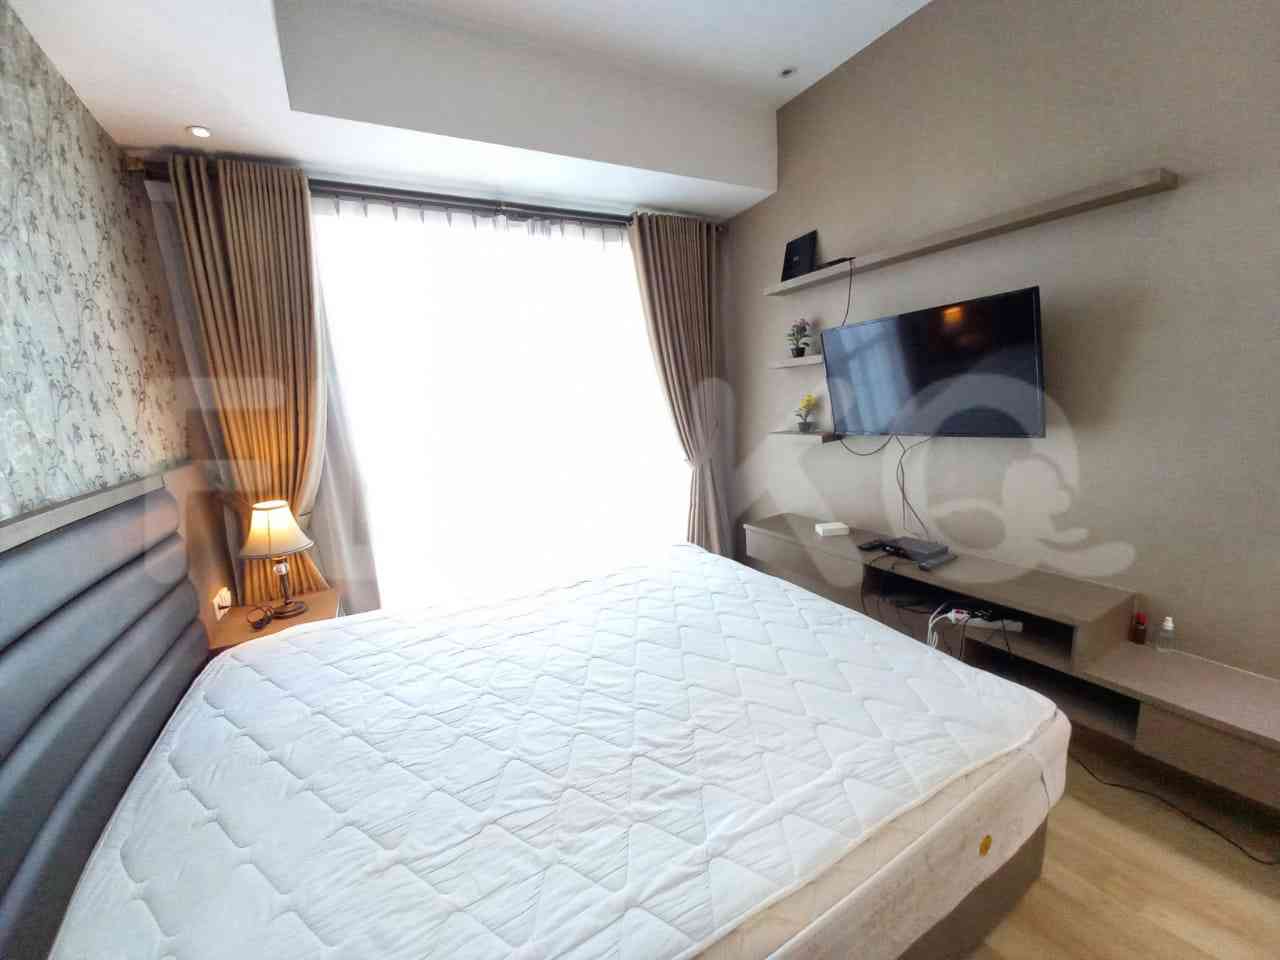 2 Bedroom on 80th Floor for Rent in Casa Grande - fte0ce 2